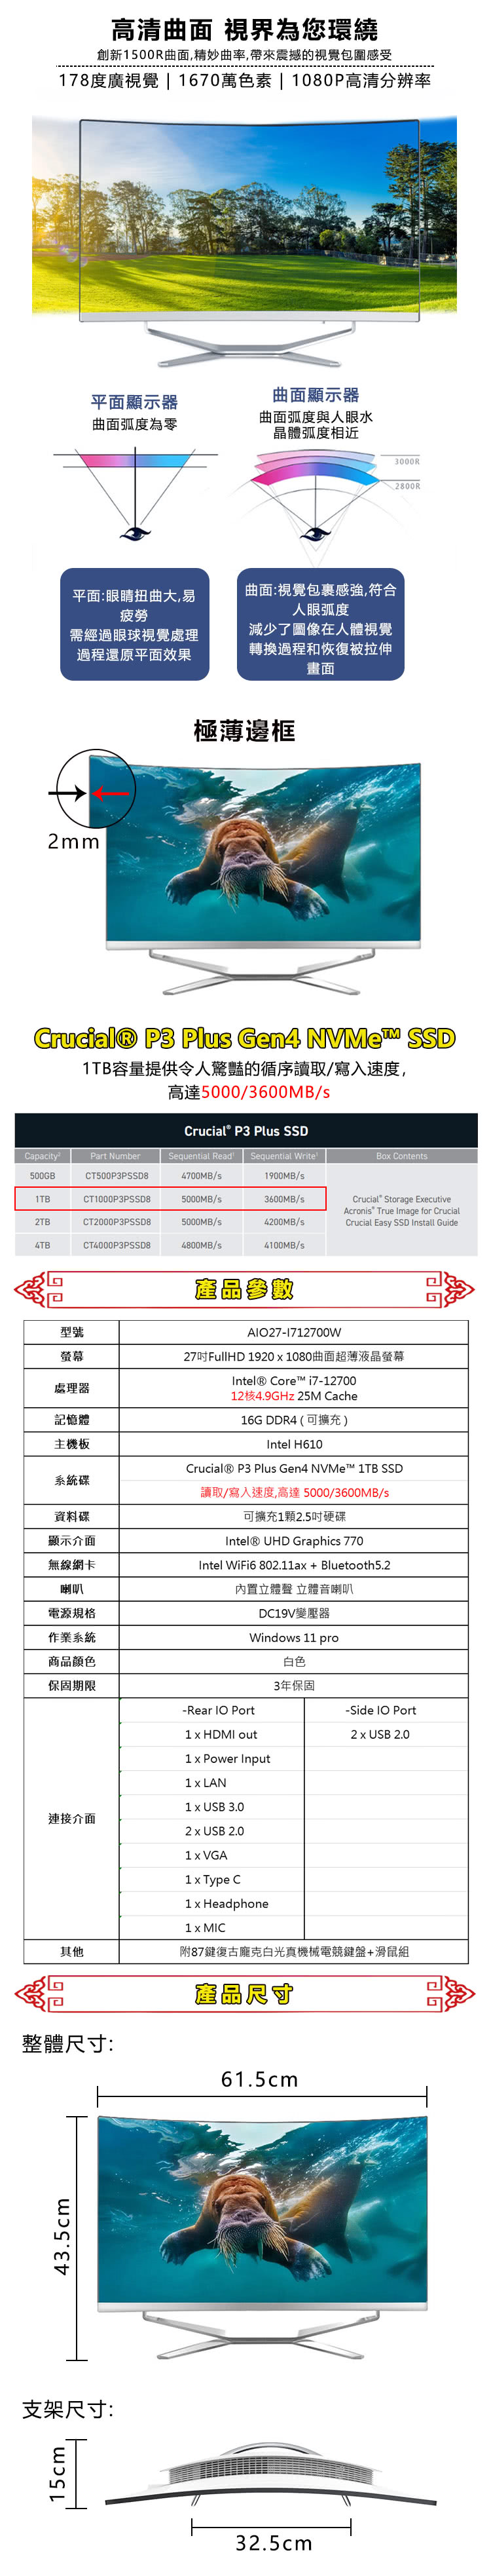 台灣霓虹 27型曲面AIO液晶電腦(i7-12700/16G